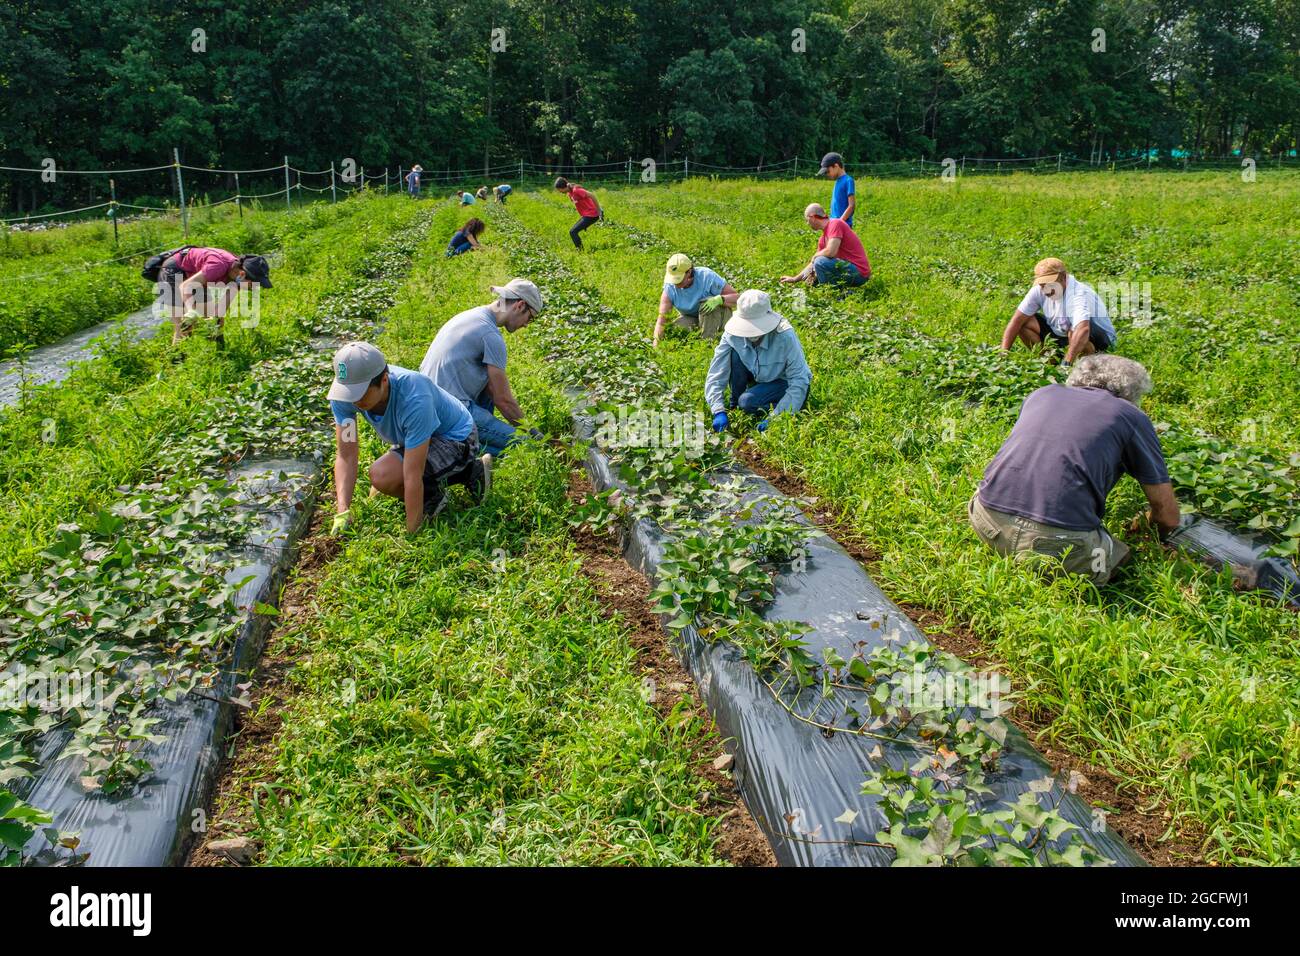 Voluntarios trabajando en una gran granja de verduras en el centro de Massachusetts para cosechar verduras para el banco de alimentos Worcester, Massachusetts Foto de stock